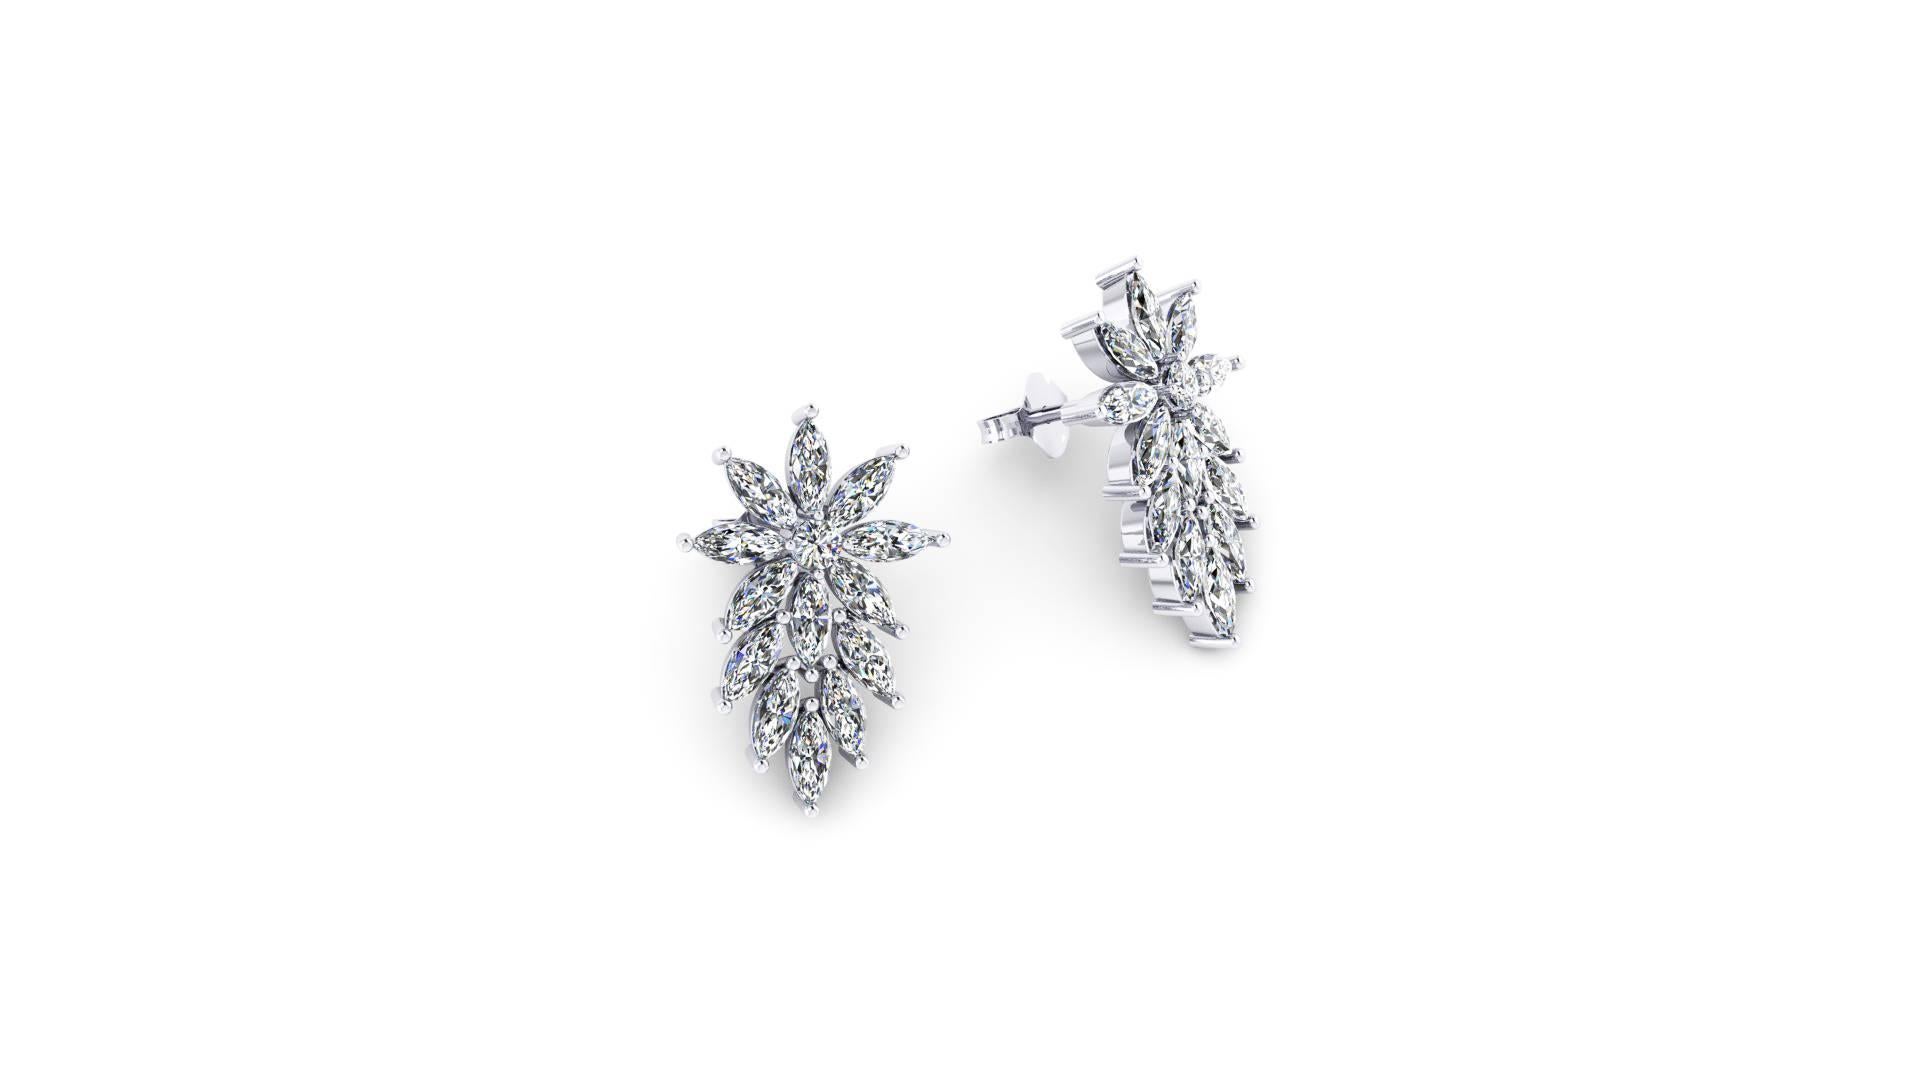 3.40 Karat Marquise Form Diamanten Star Ohrringe, handgefertigt in Platin in New York von italienischen Meister Juwelier, atemberaubende Diamant-Ohrringe, hohe funkelnde, schicke und feine Eleganz für jedes Alter geschmackvolle Frauen, ideales